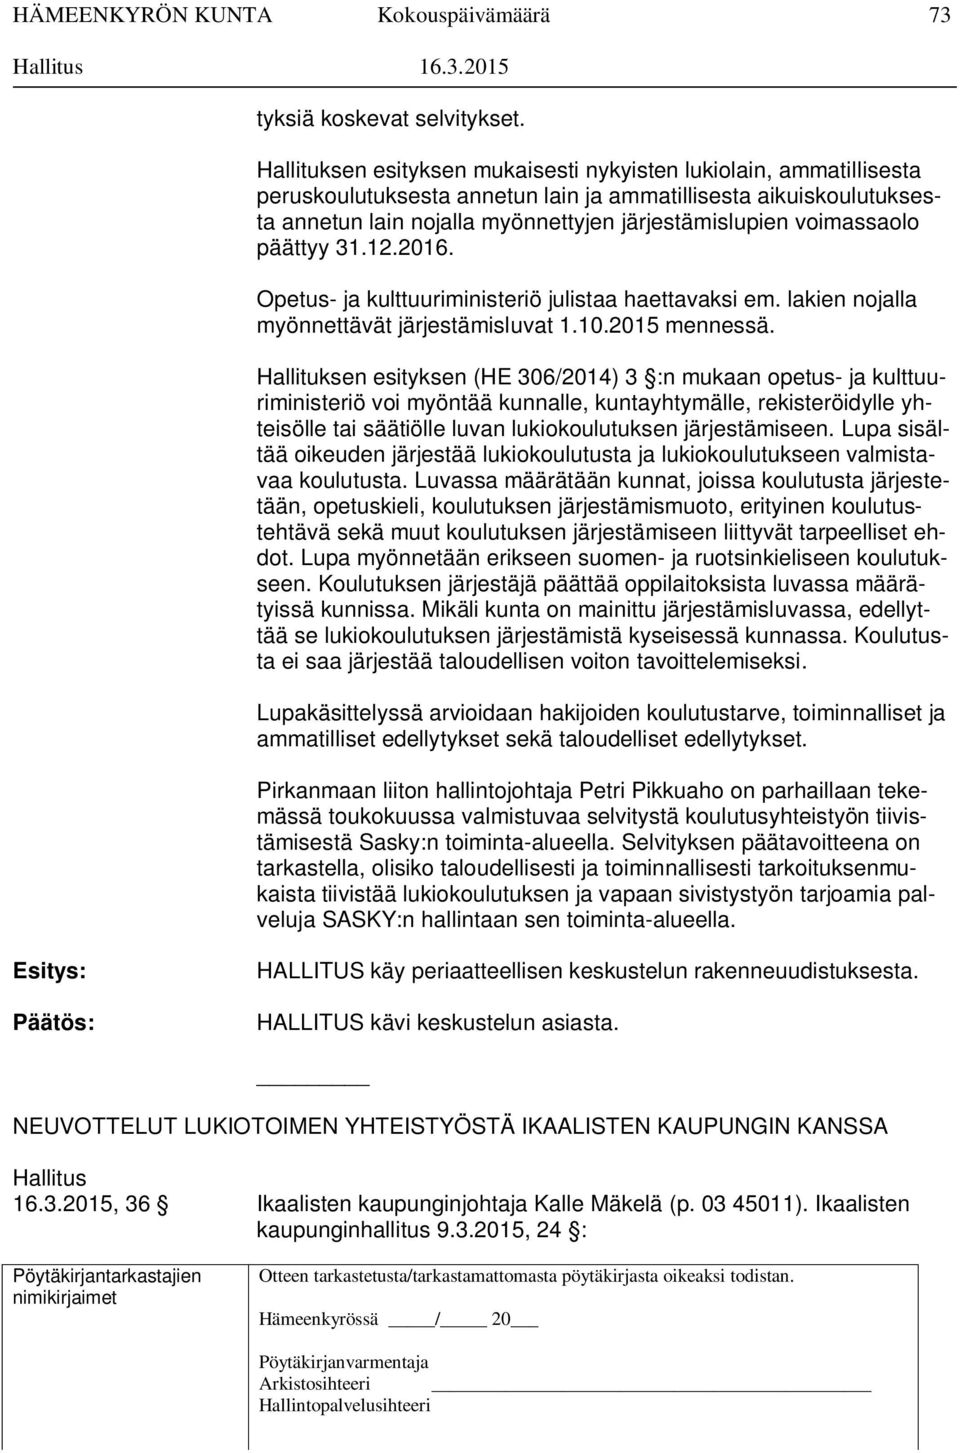 voimassaolo päättyy 31.12.2016. Opetus- ja kulttuuriministeriö julistaa haettavaksi em. lakien nojalla myönnettävät järjestämisluvat 1.10.2015 mennessä.